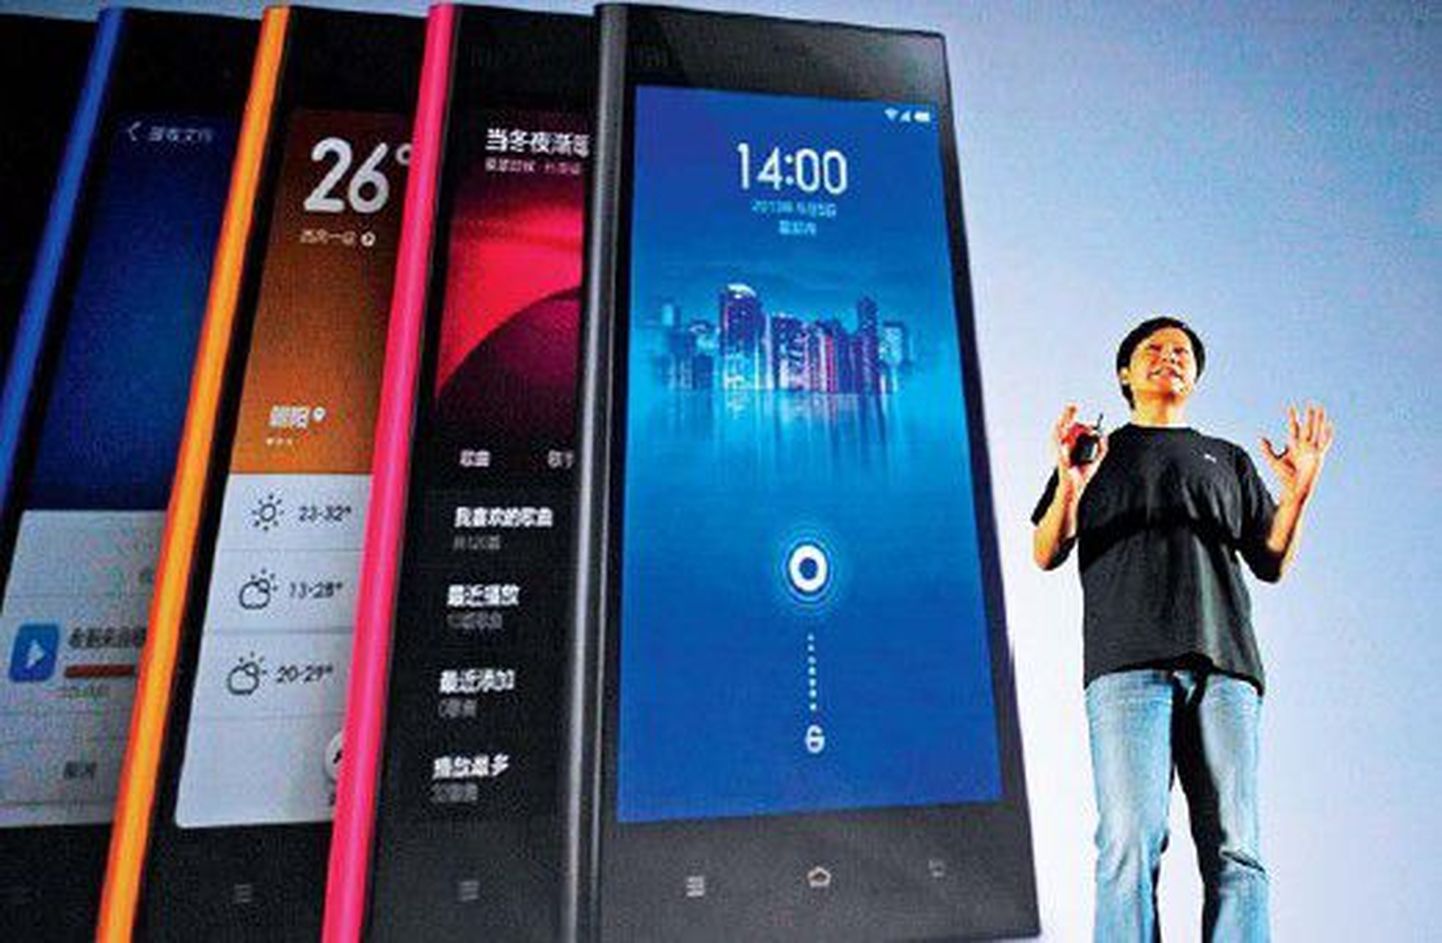 Hiina Xiaomi juhatuse esimees Lei Jun esitles septembris uut telefonimudelit, olles riietunud nagu tema suur eeskuju Steve Jobs – teksad ja tume T-särk. Xiaomi matkib Apple’i strateegiat ja telefone, mistõttu on temast saanud maailma kiiremini arenevaid mobiilimüüjaid.